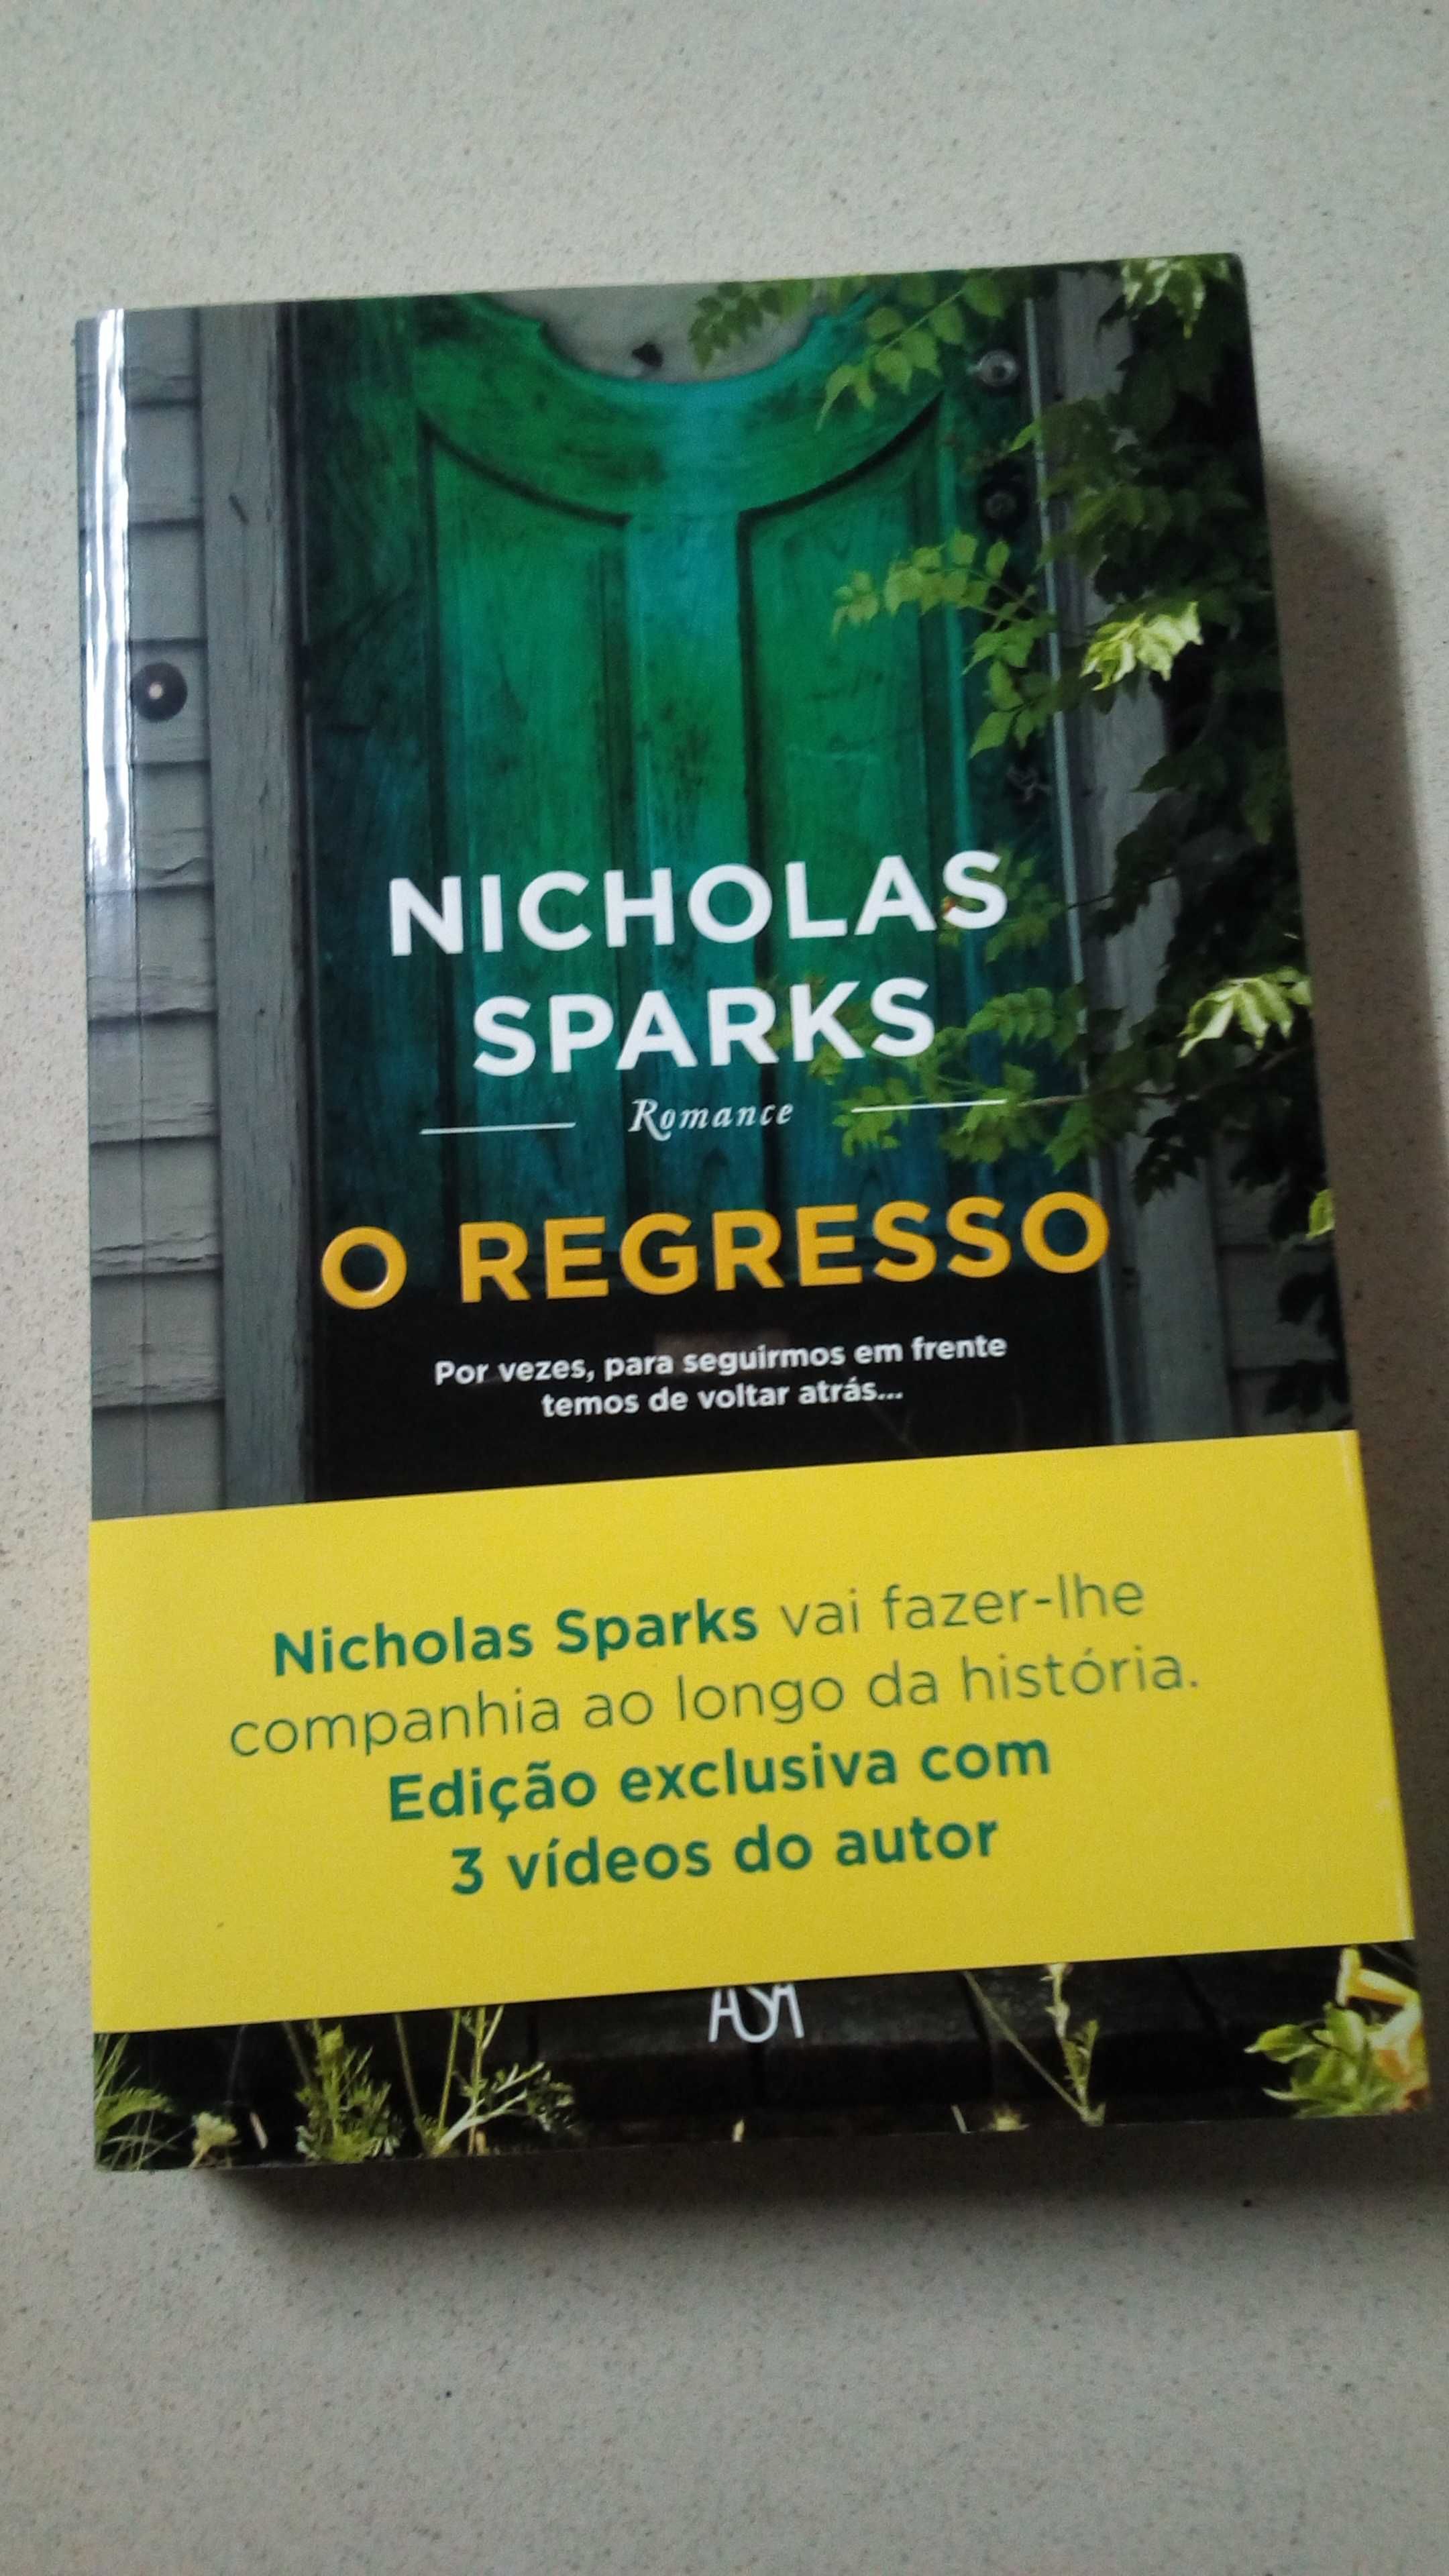 Livro "O Regresso" de Nicholas Sparks